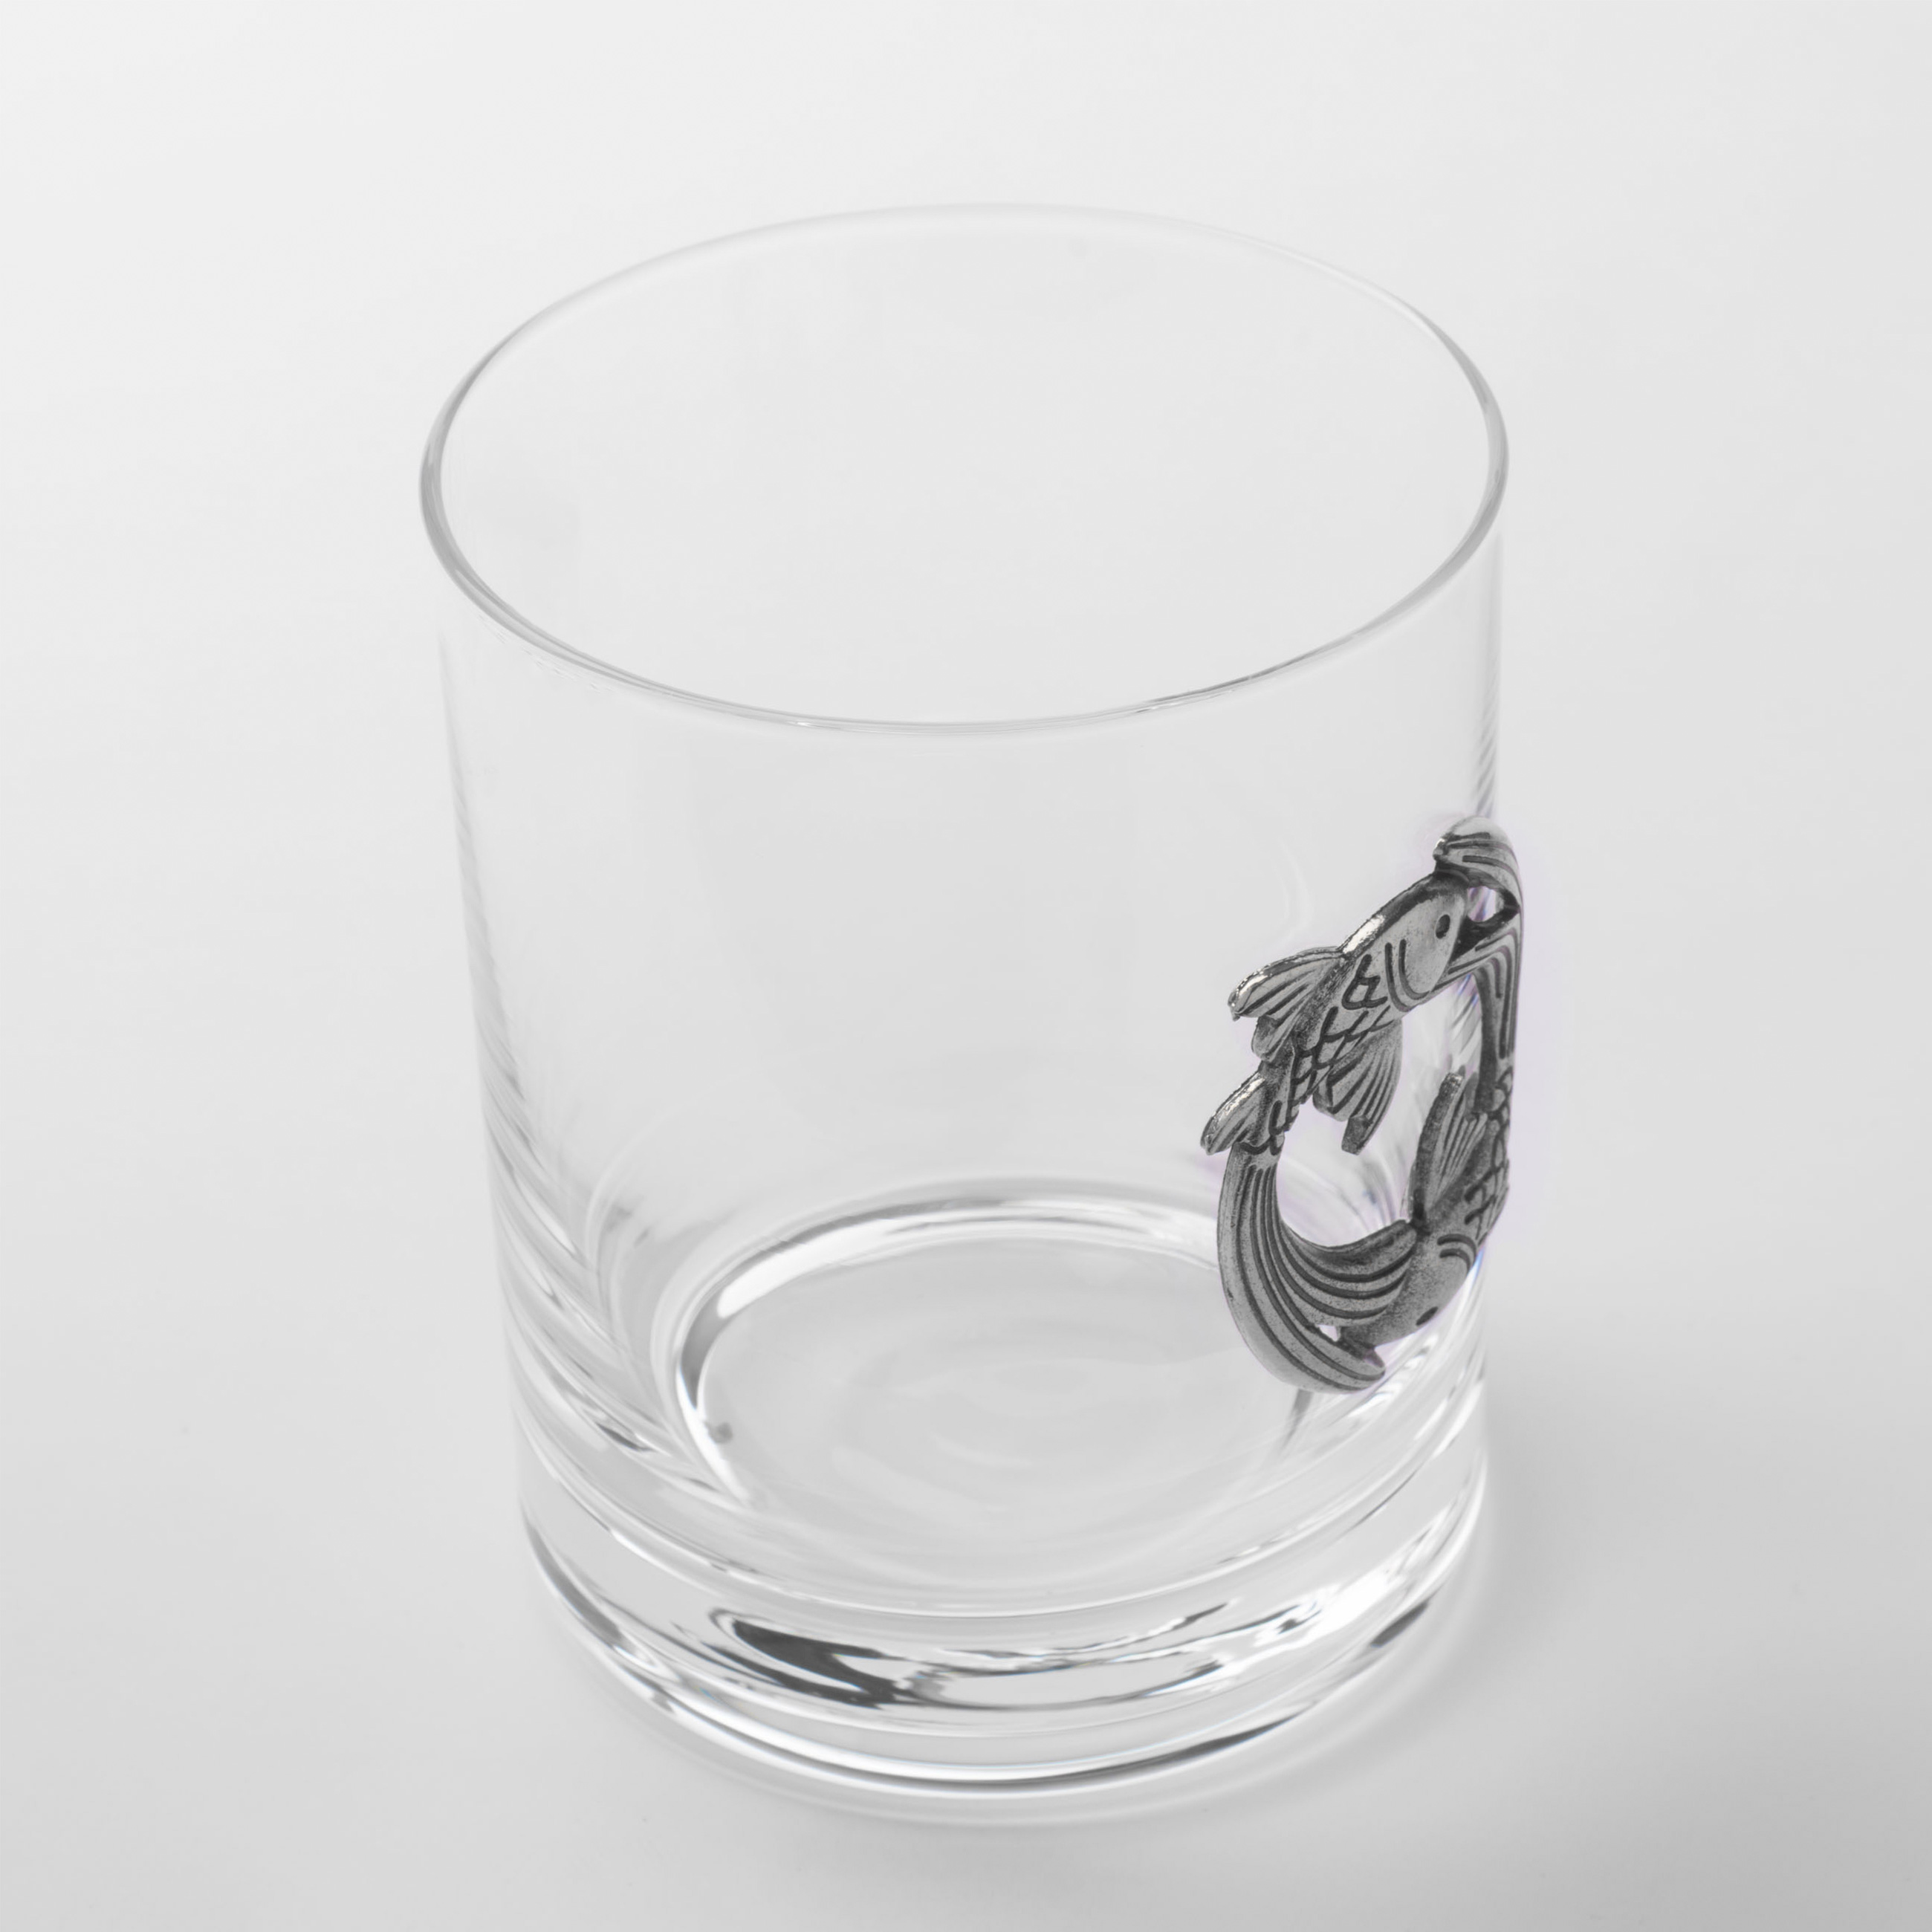 Стакан для виски, 340 мл, стекло/металл, серебристый, Рыбы, Zodiac изображение № 3